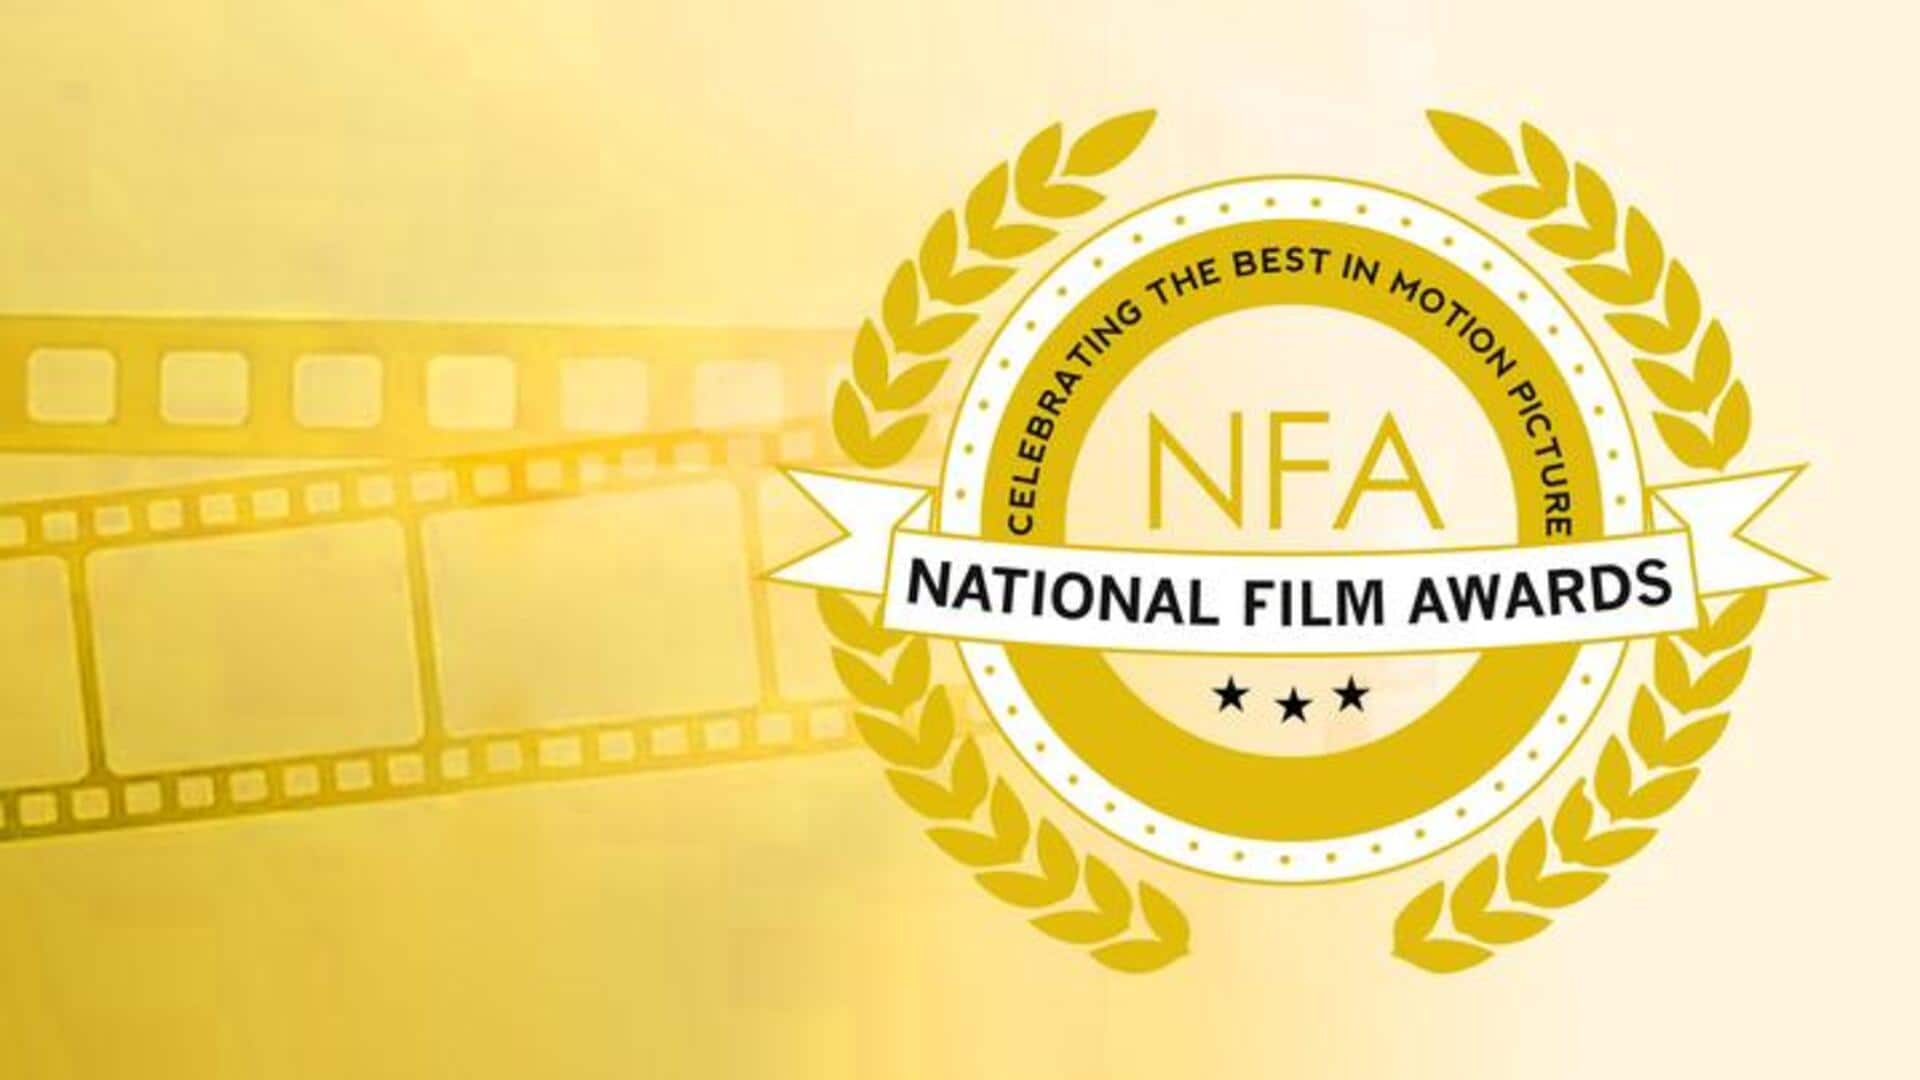 राष्ट्रीय फिल्म पुरस्कार की श्रेणियों में फेरबदल, नरगिस दत्त और इंदिरा गांधी पुरस्कार का नाम बदला